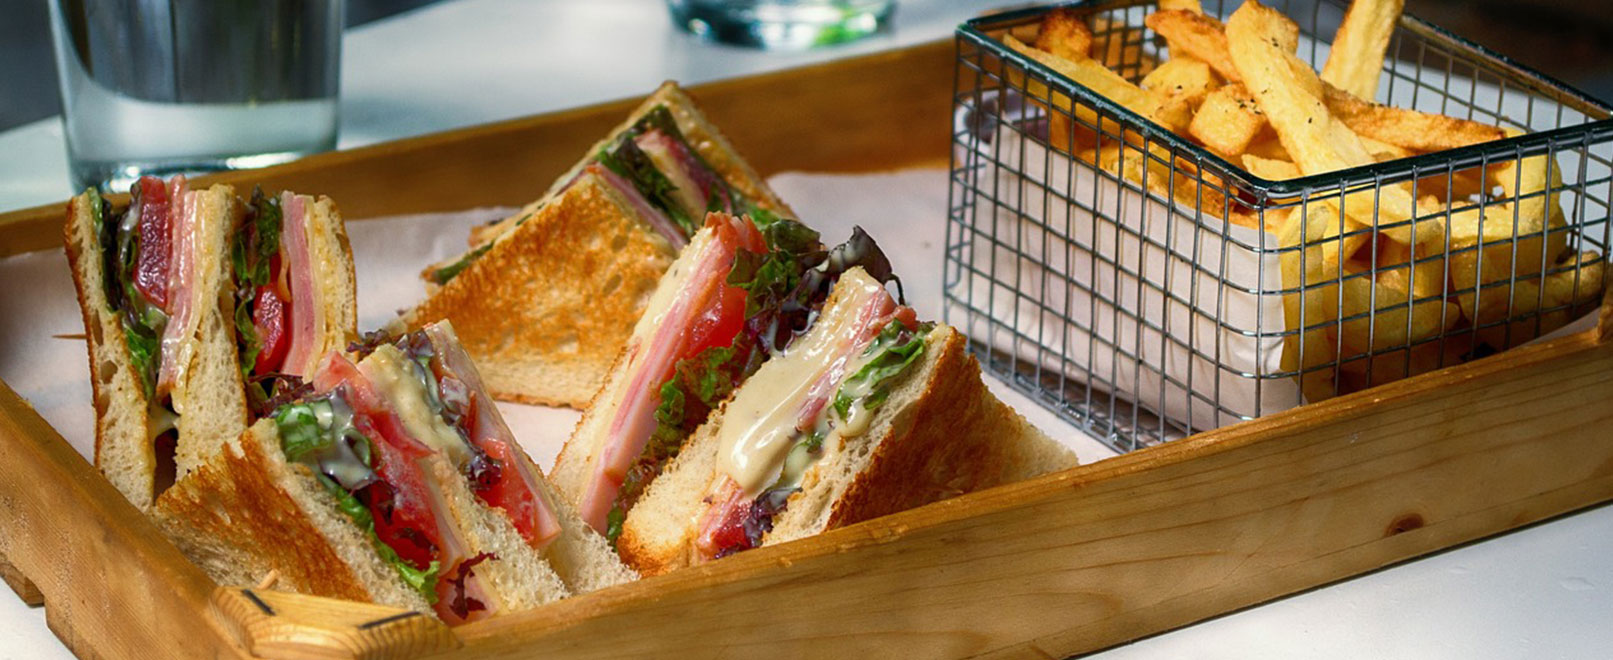 Sandwich © Pixabay